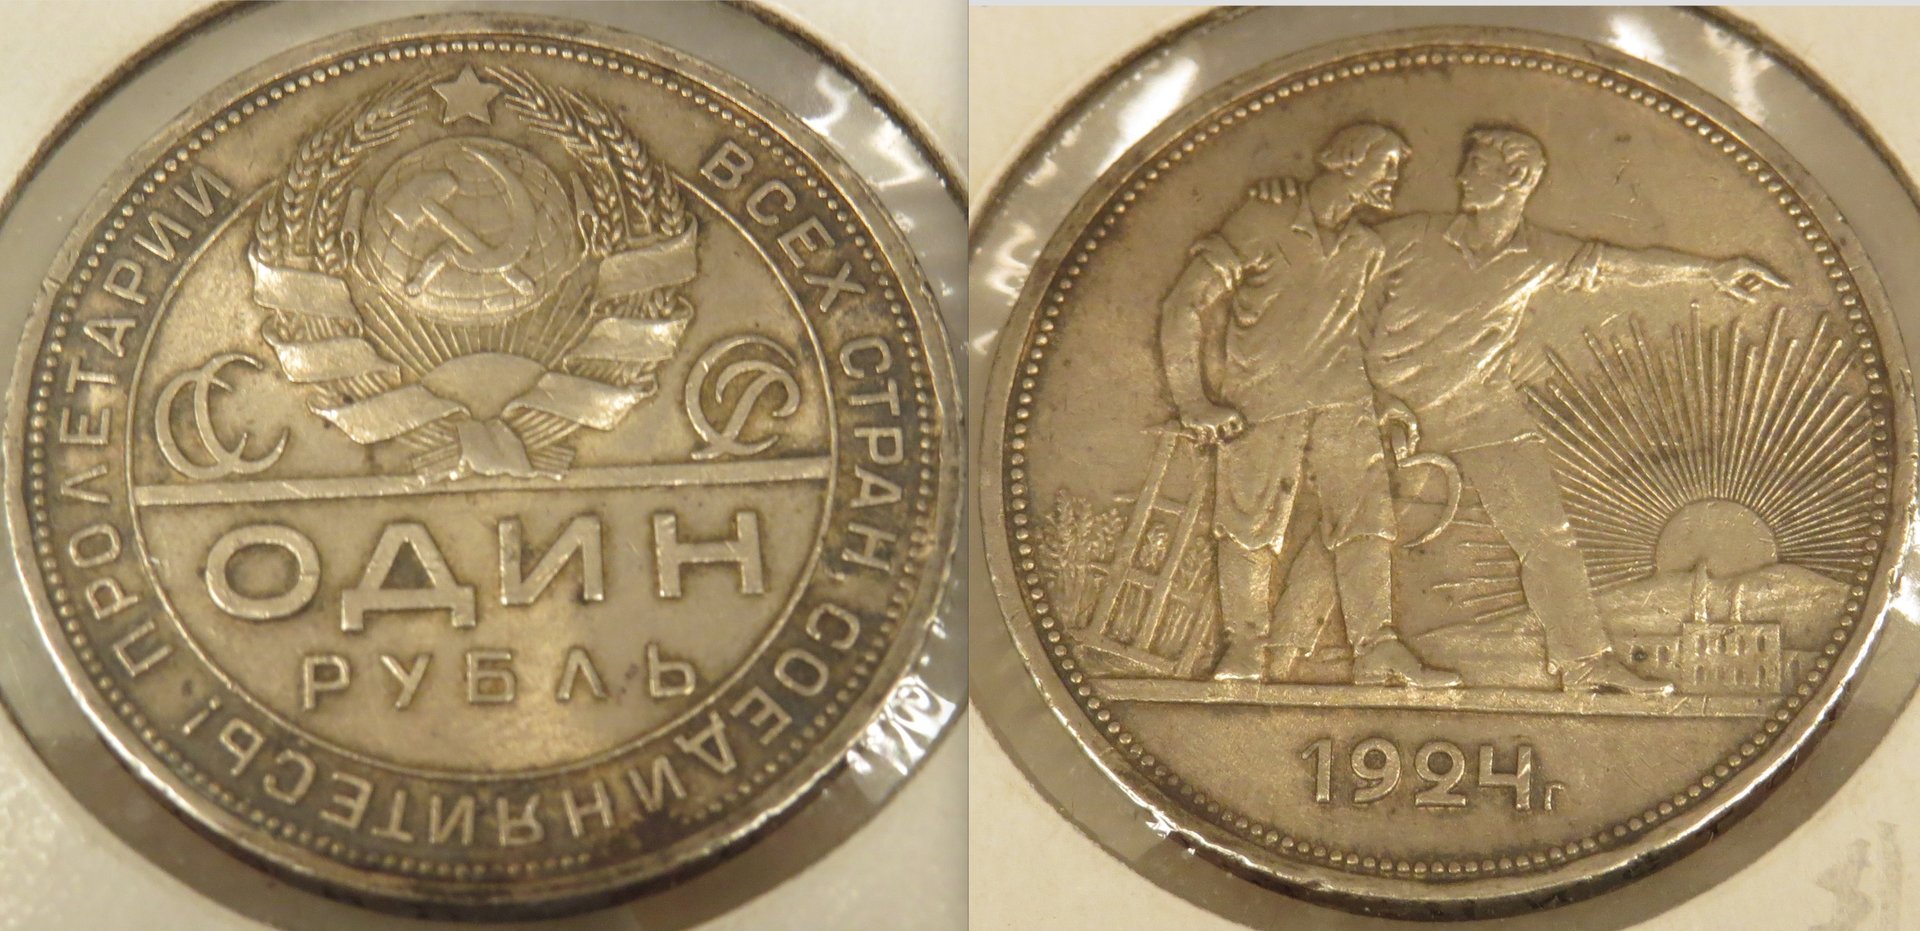 USSR 1 ruble 1924 copy.jpeg